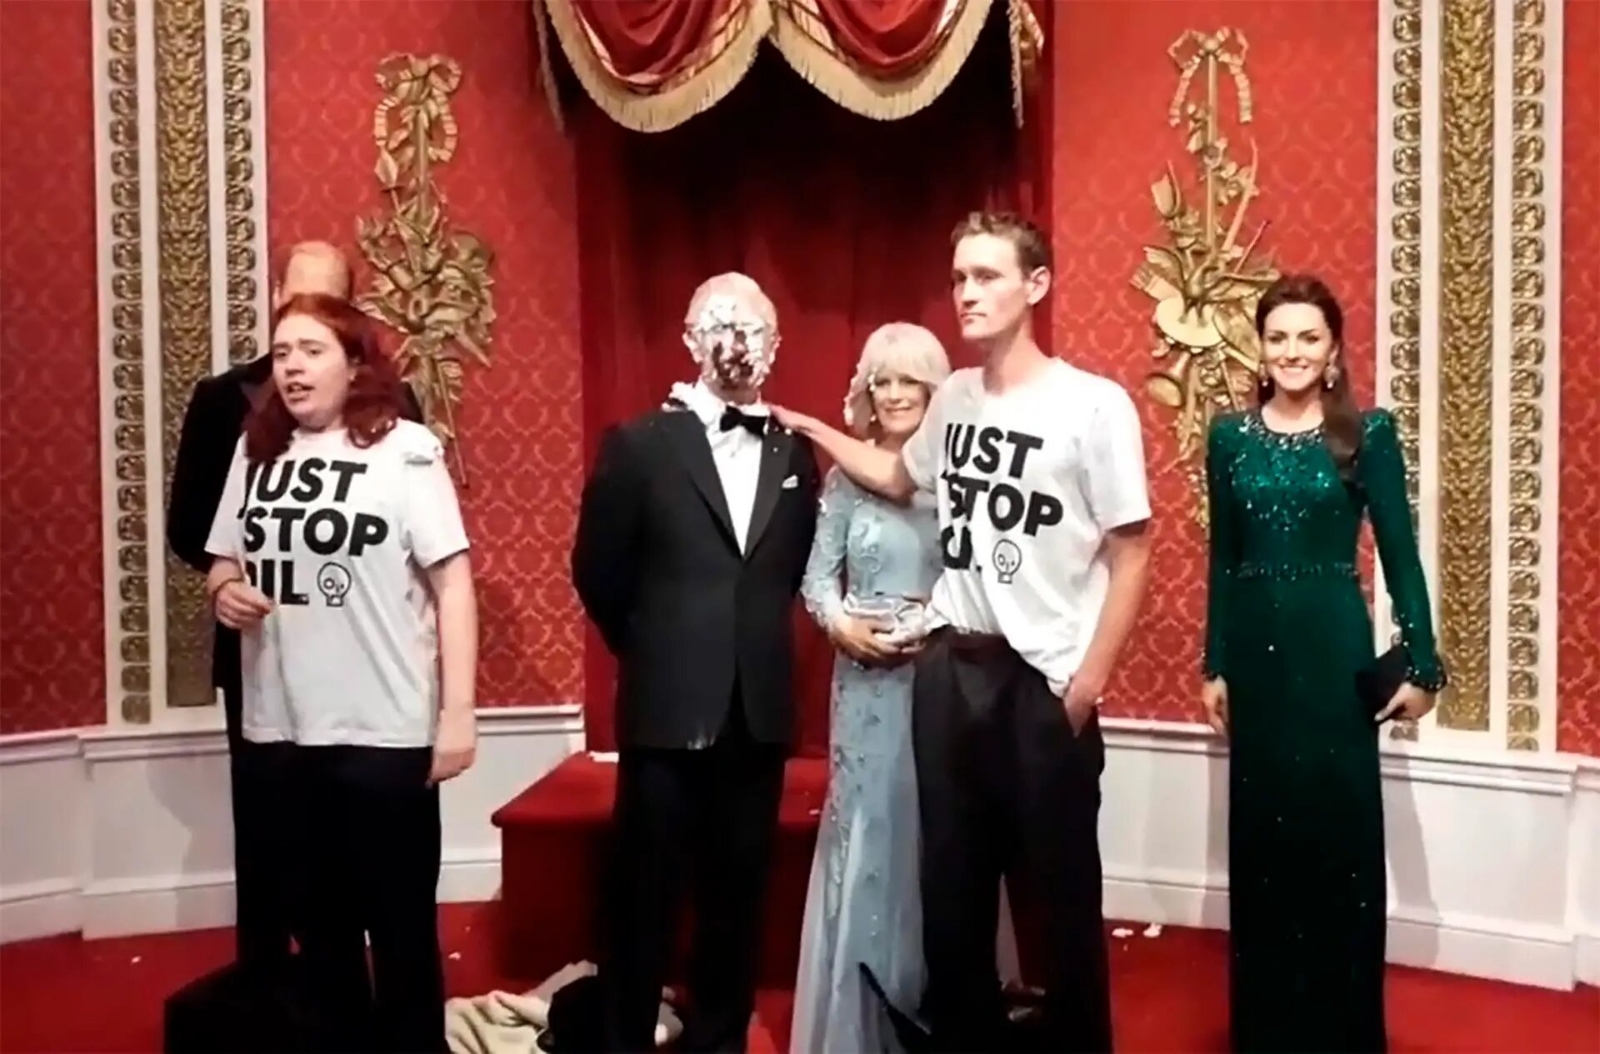 Activistas arrojan pastel a figura del Rey Carlos III en Londres: VIDEO